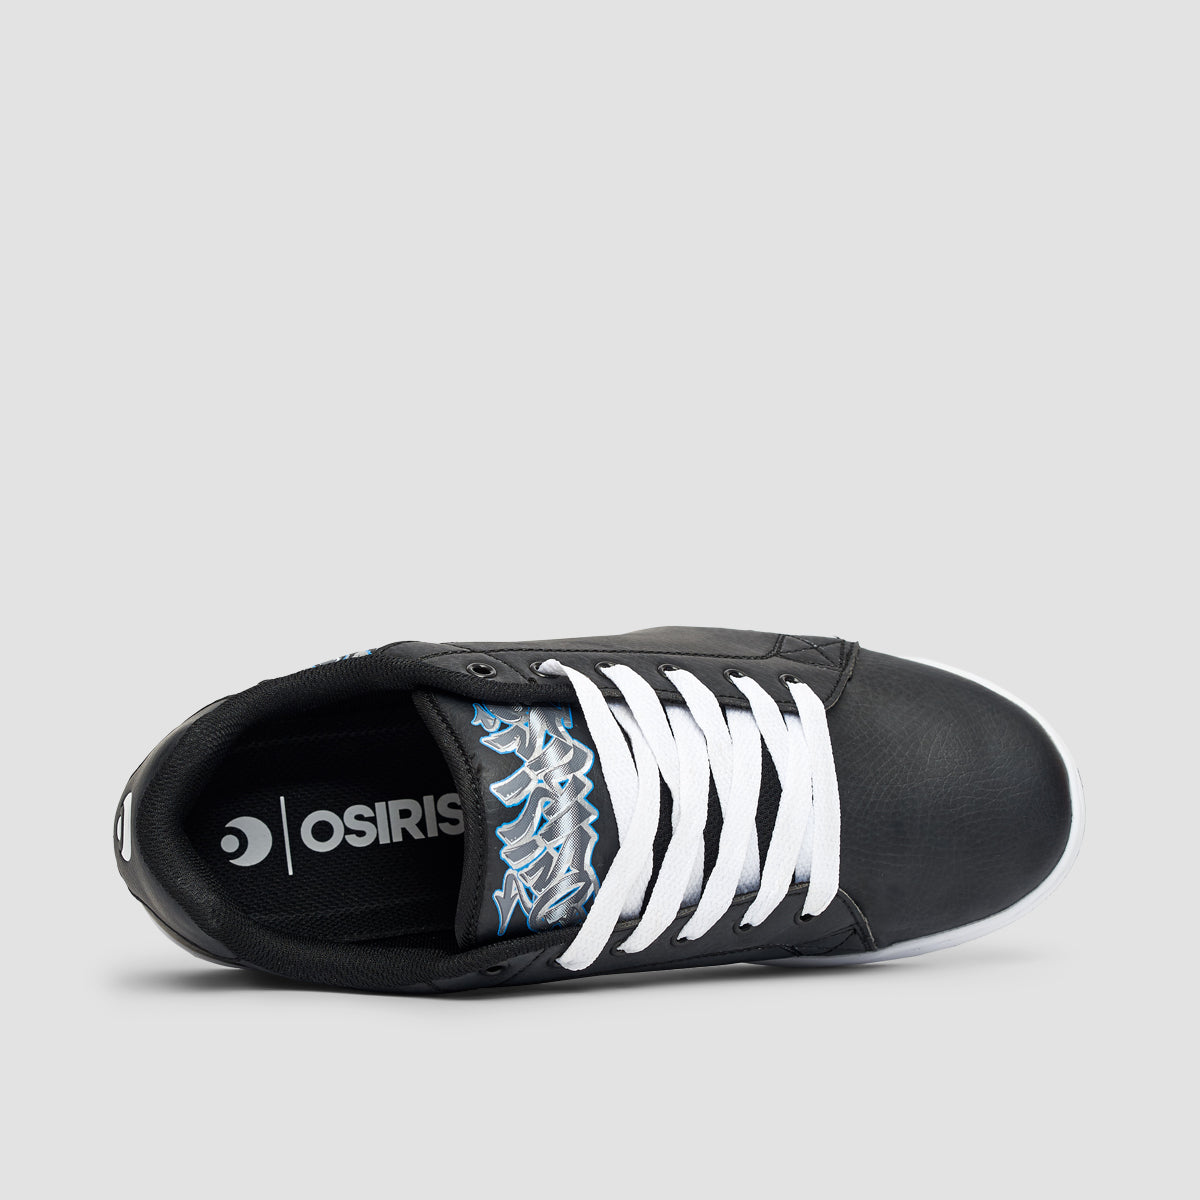 Osiris Troma Icon Shoes - Black/Sweyda